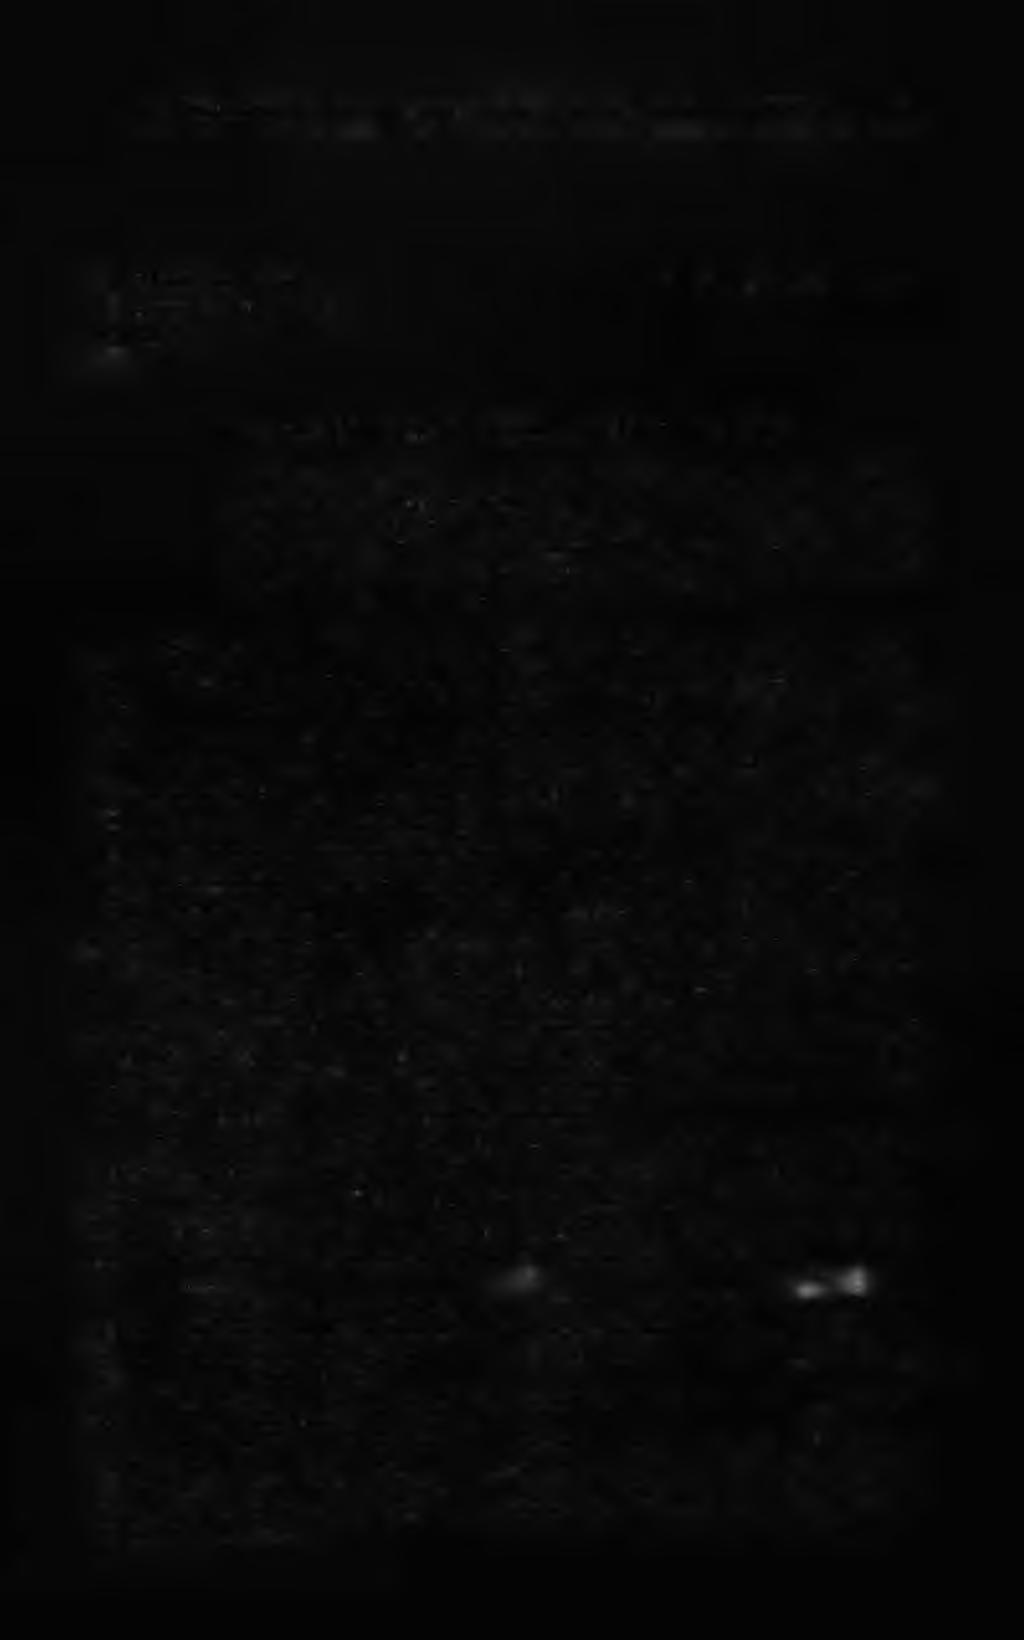 P. S im oniti, Glareanov prevod Ilijade, ŽA 34 (1984) 187 193 187 PRIMOŽ SIMONITI UDK 875 1 = 03 = 733 Filozofska fakulteta Ljubljana GLAREANOV LATINSKI PREVOD ILIADE Abstract: Besprochen wird die